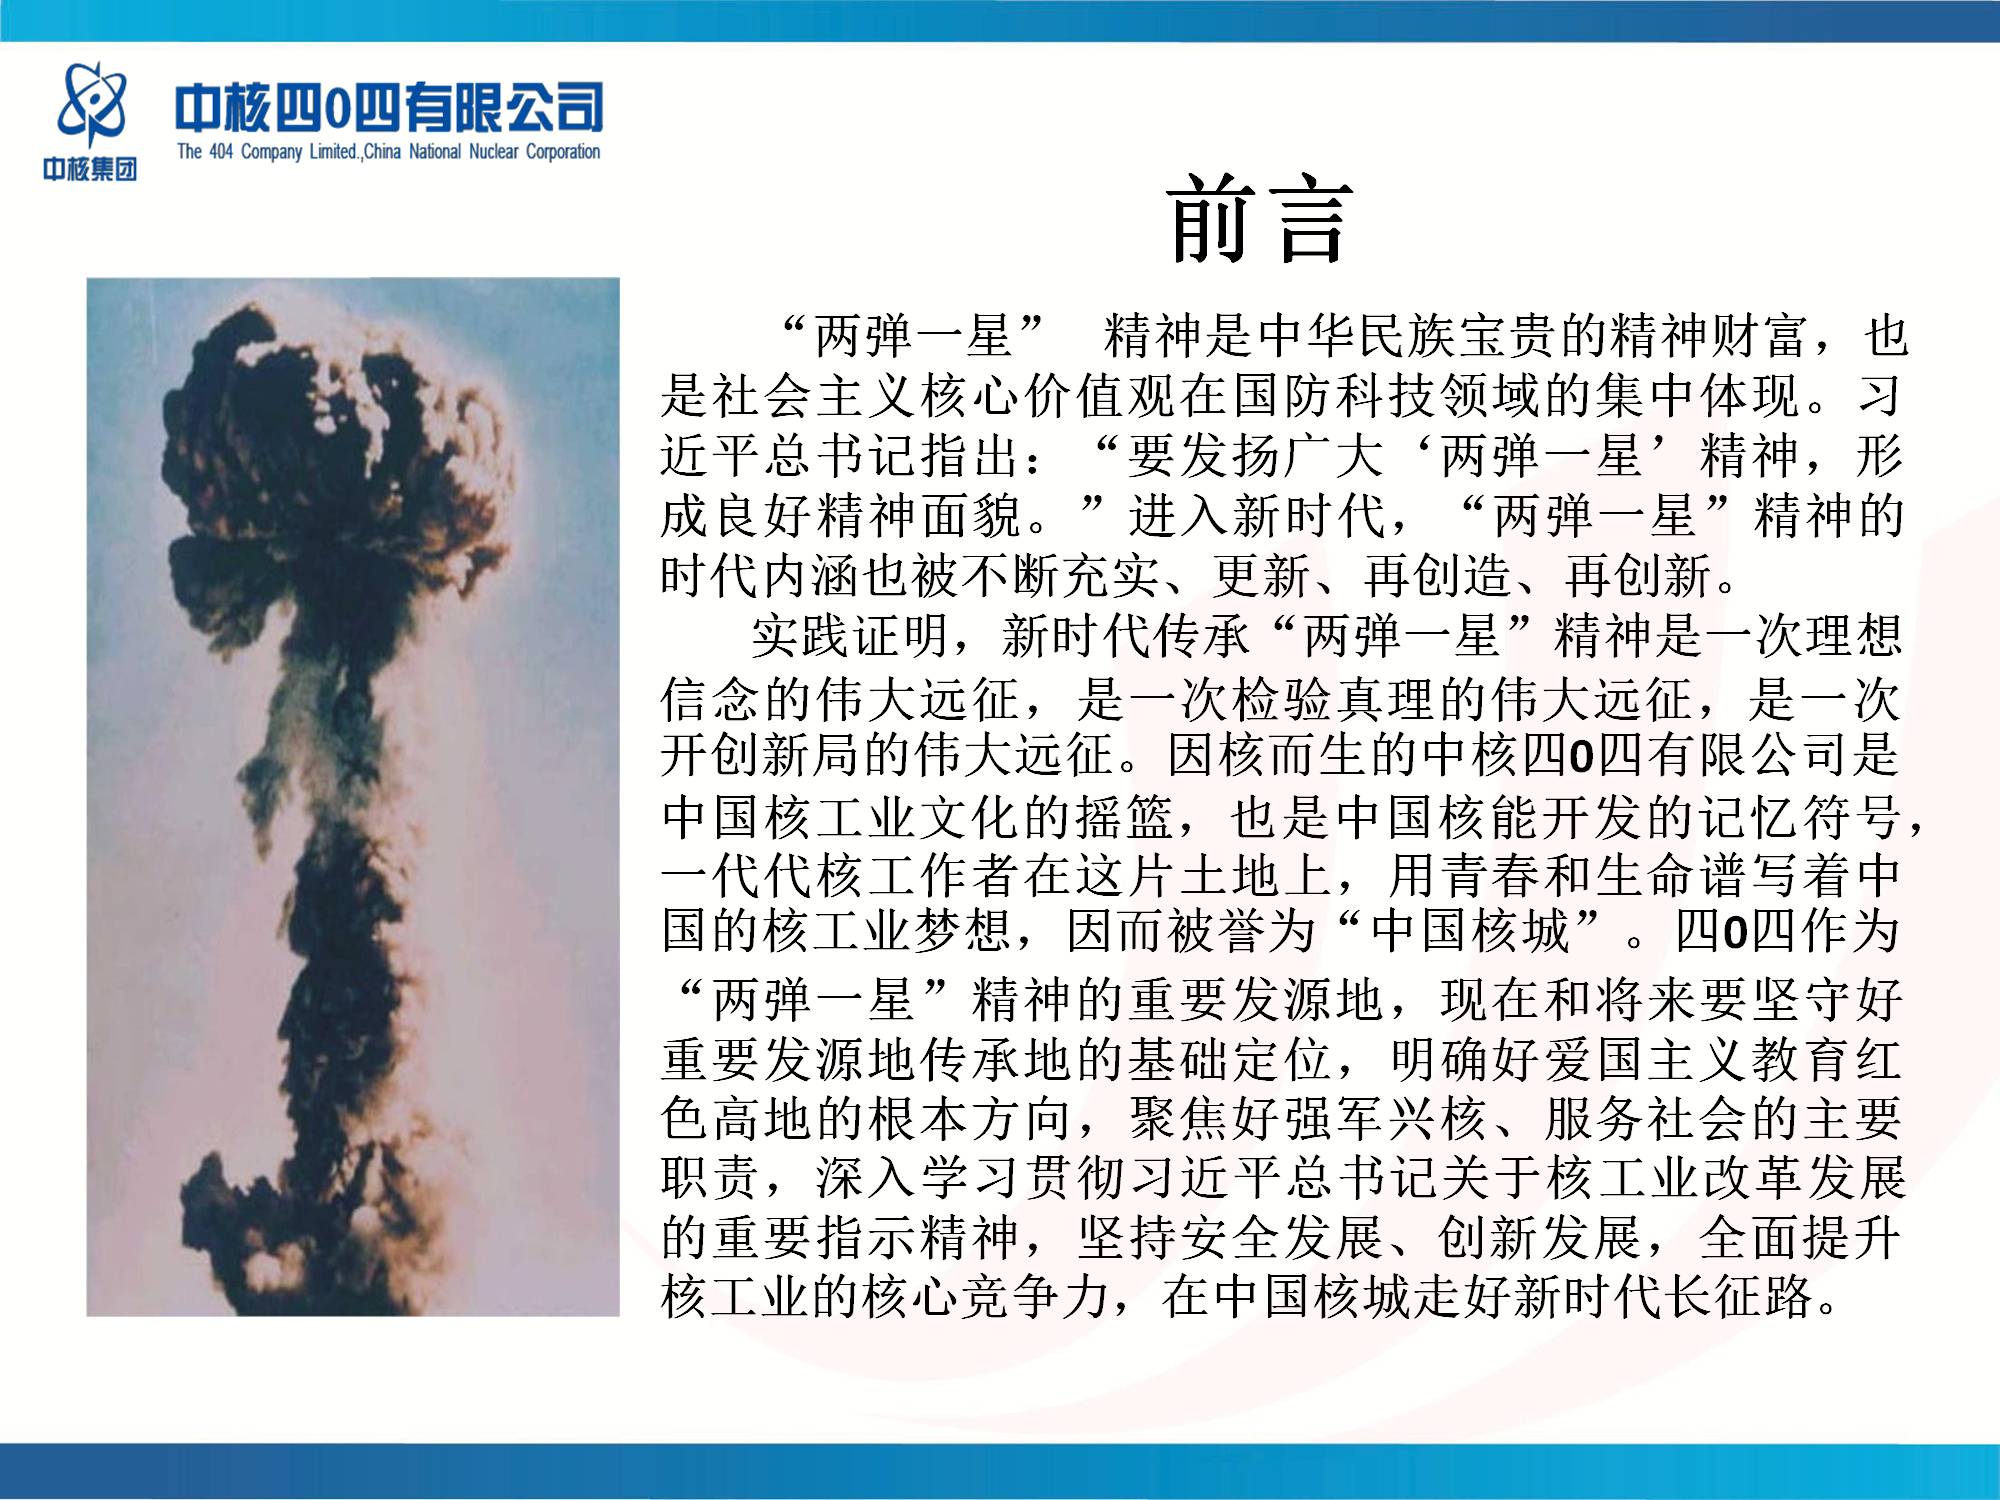 中核四0四有限公司《传承“两弹一星”精神 走好新时代“中国核城”长征路》